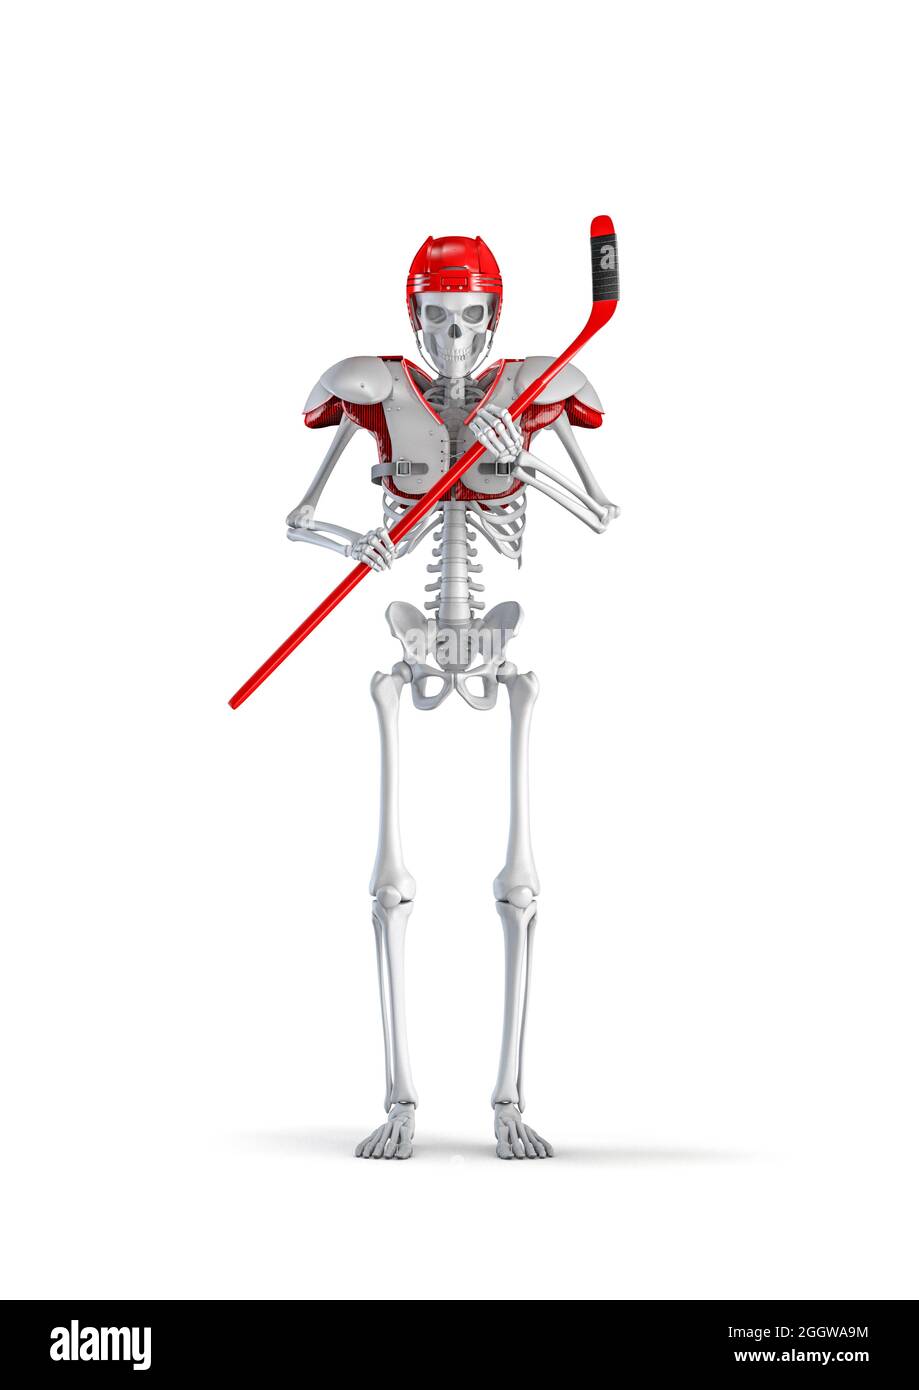 https://c8.alamy.com/compde/2ggwa9m/eishockey-spieler-skelett-3d-darstellung-der-mannlichen-menschlichen-skelett-figur-mit-hockey-stick-tragt-helm-und-pads-isoliert-auf-weissem-studio-rucken-2ggwa9m.jpg